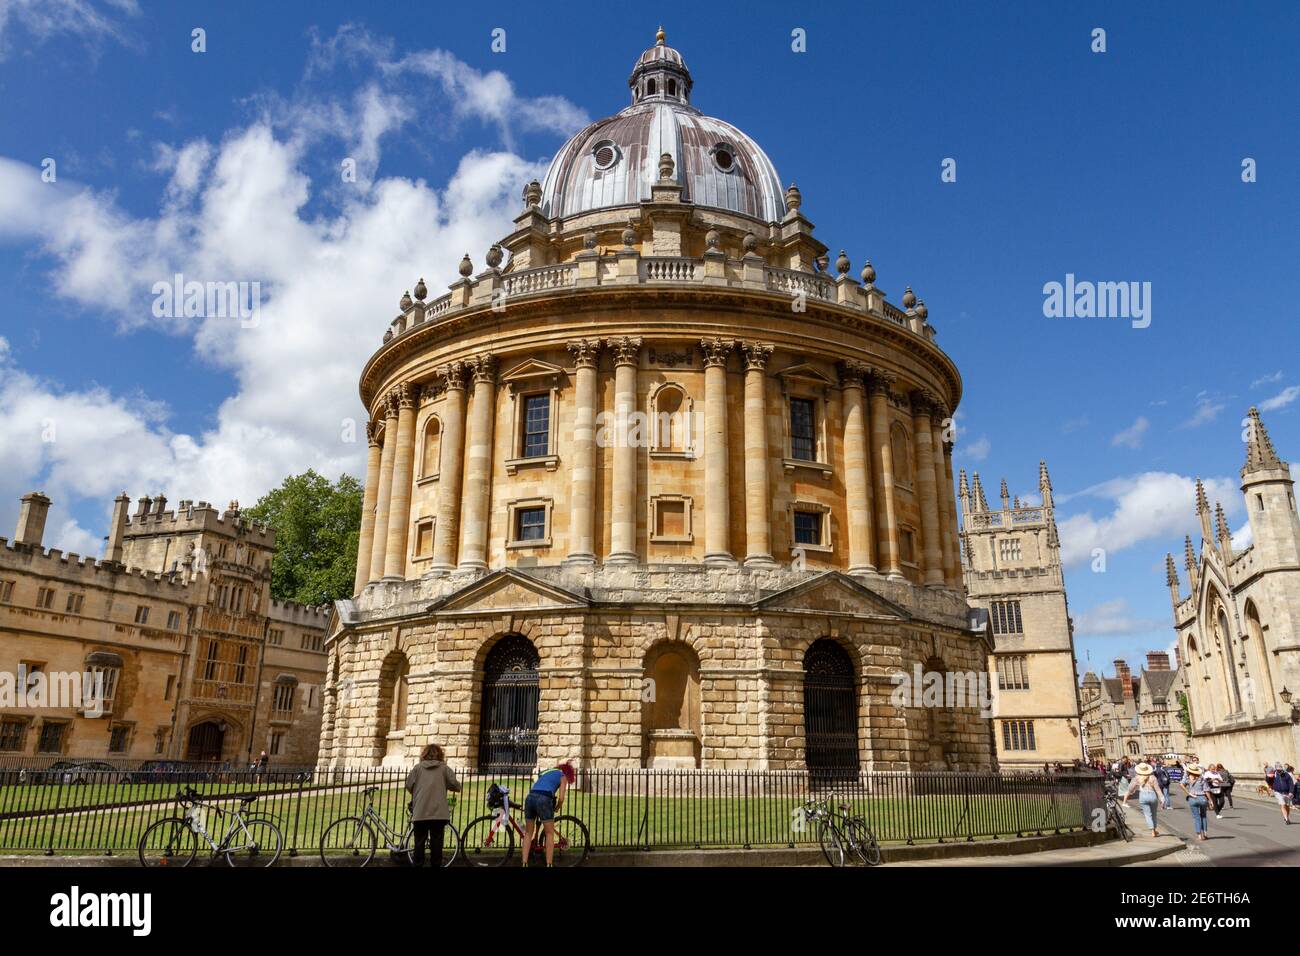 Caméra Radcliffe sur Radcliffe Square, Oxford, Oxfordshire, Royaume-Uni. Banque D'Images